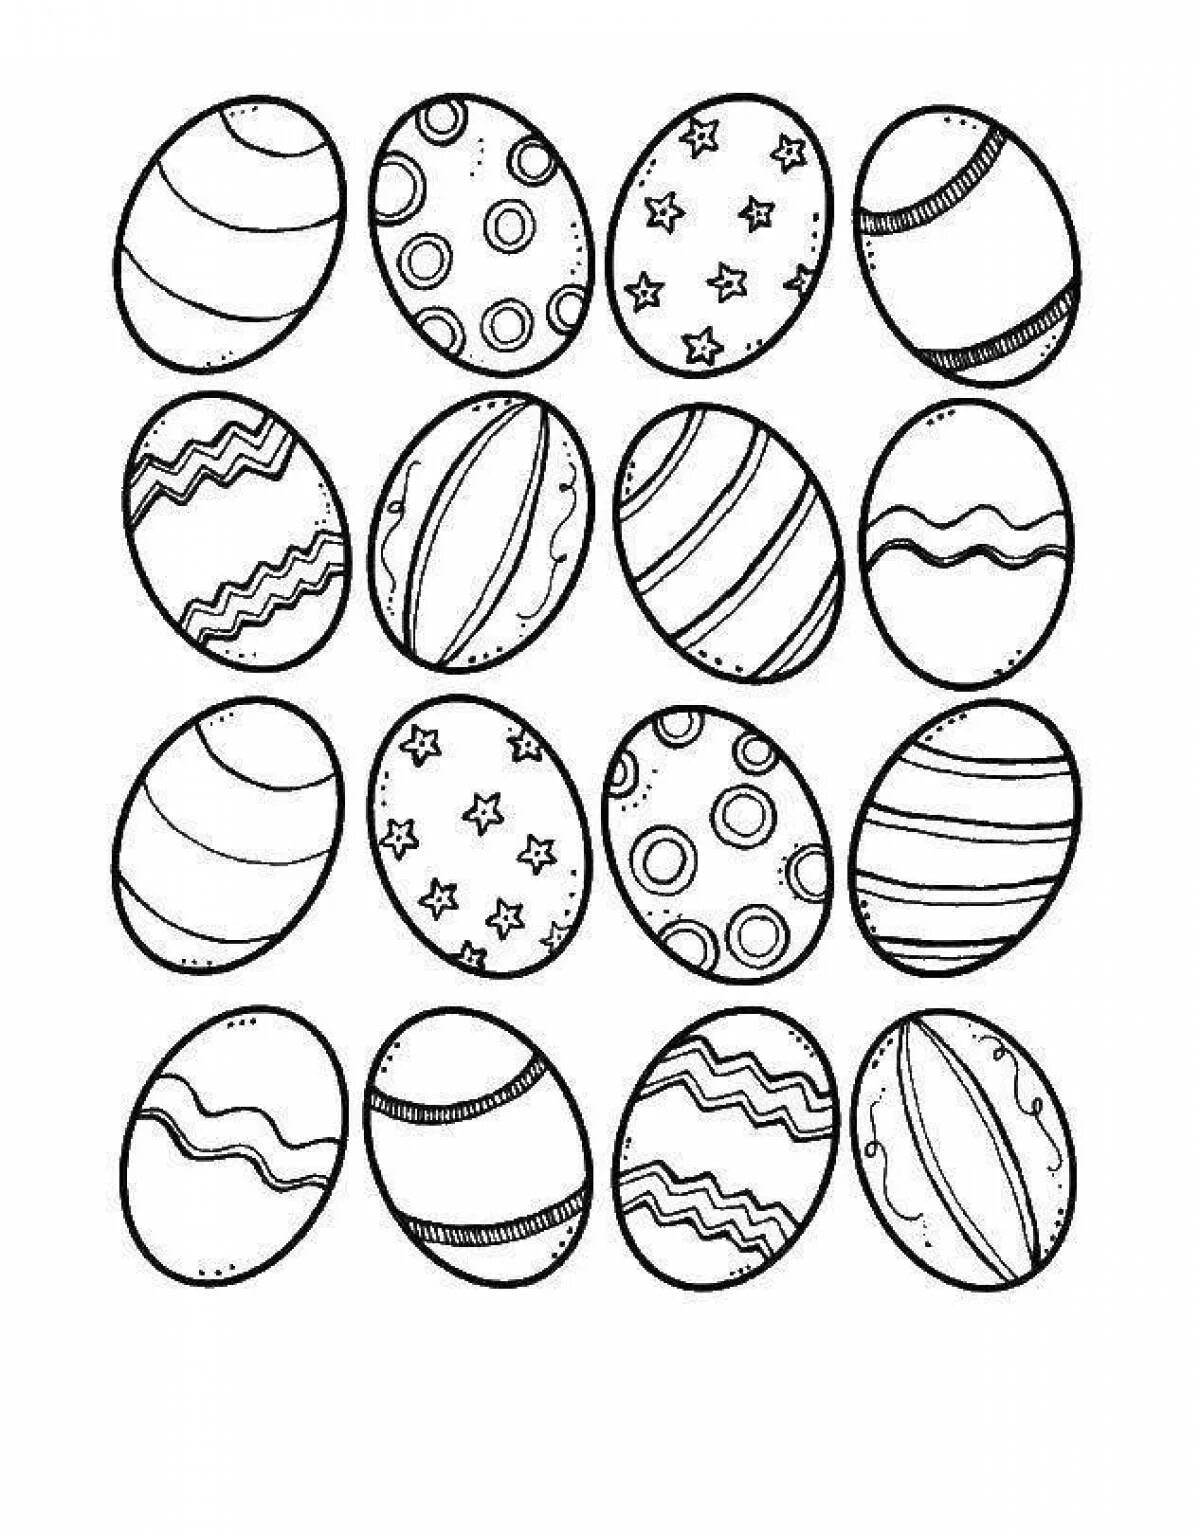 Пасхальное яйцо раскраска. Яйца на Пасху раскраска. Пасхальное яйцо раскраска для детей. Раскраски яйца на Пасху для детей. Распечатать раскраску яйца